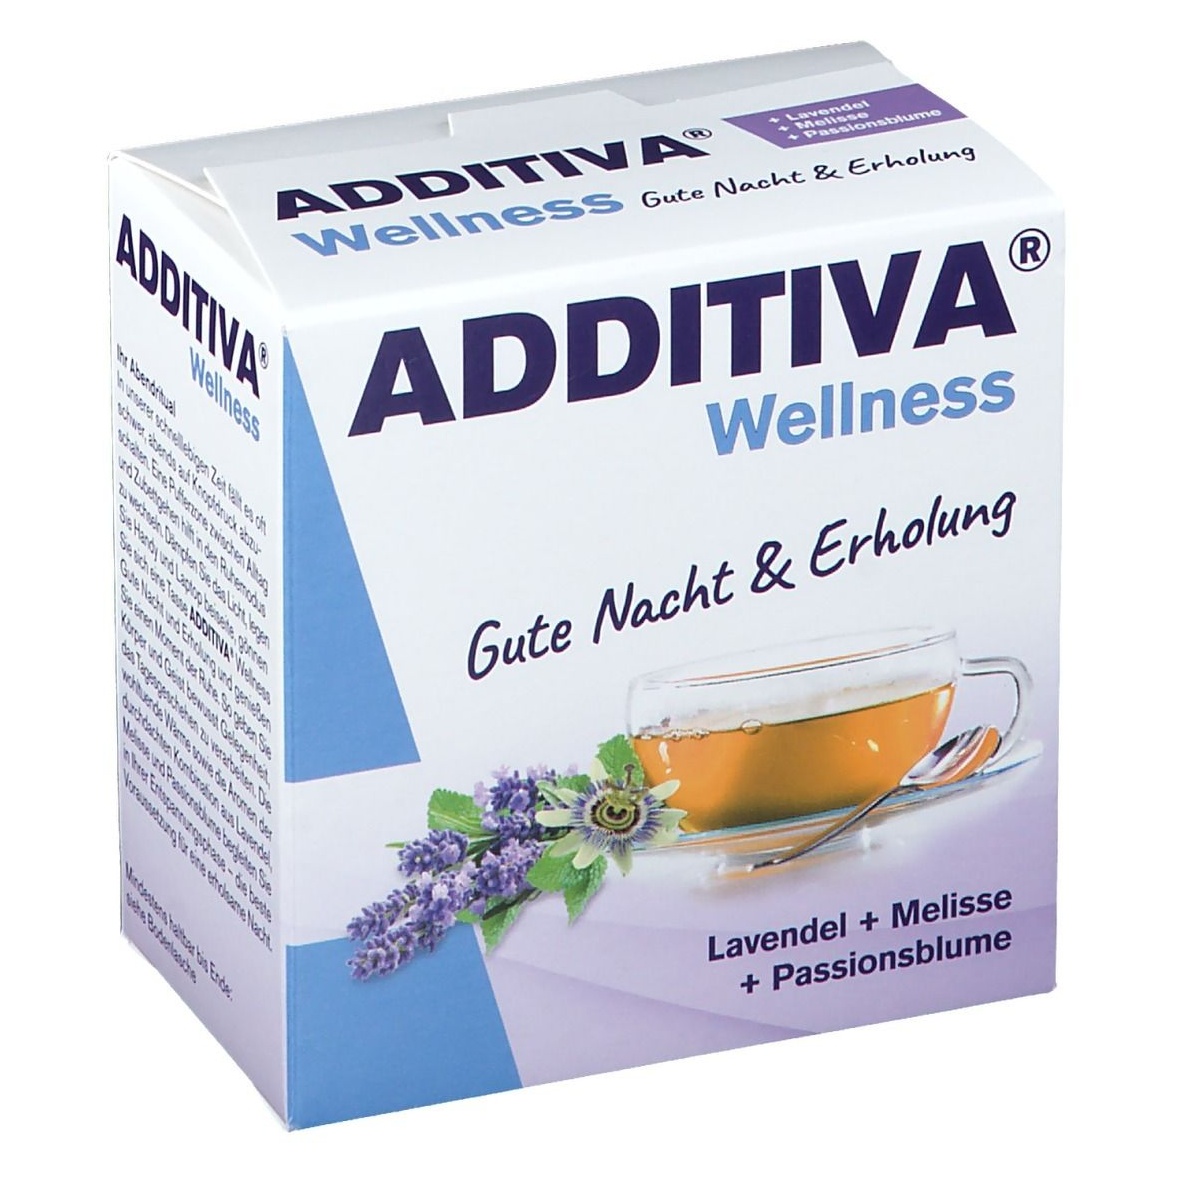 additiva wellness